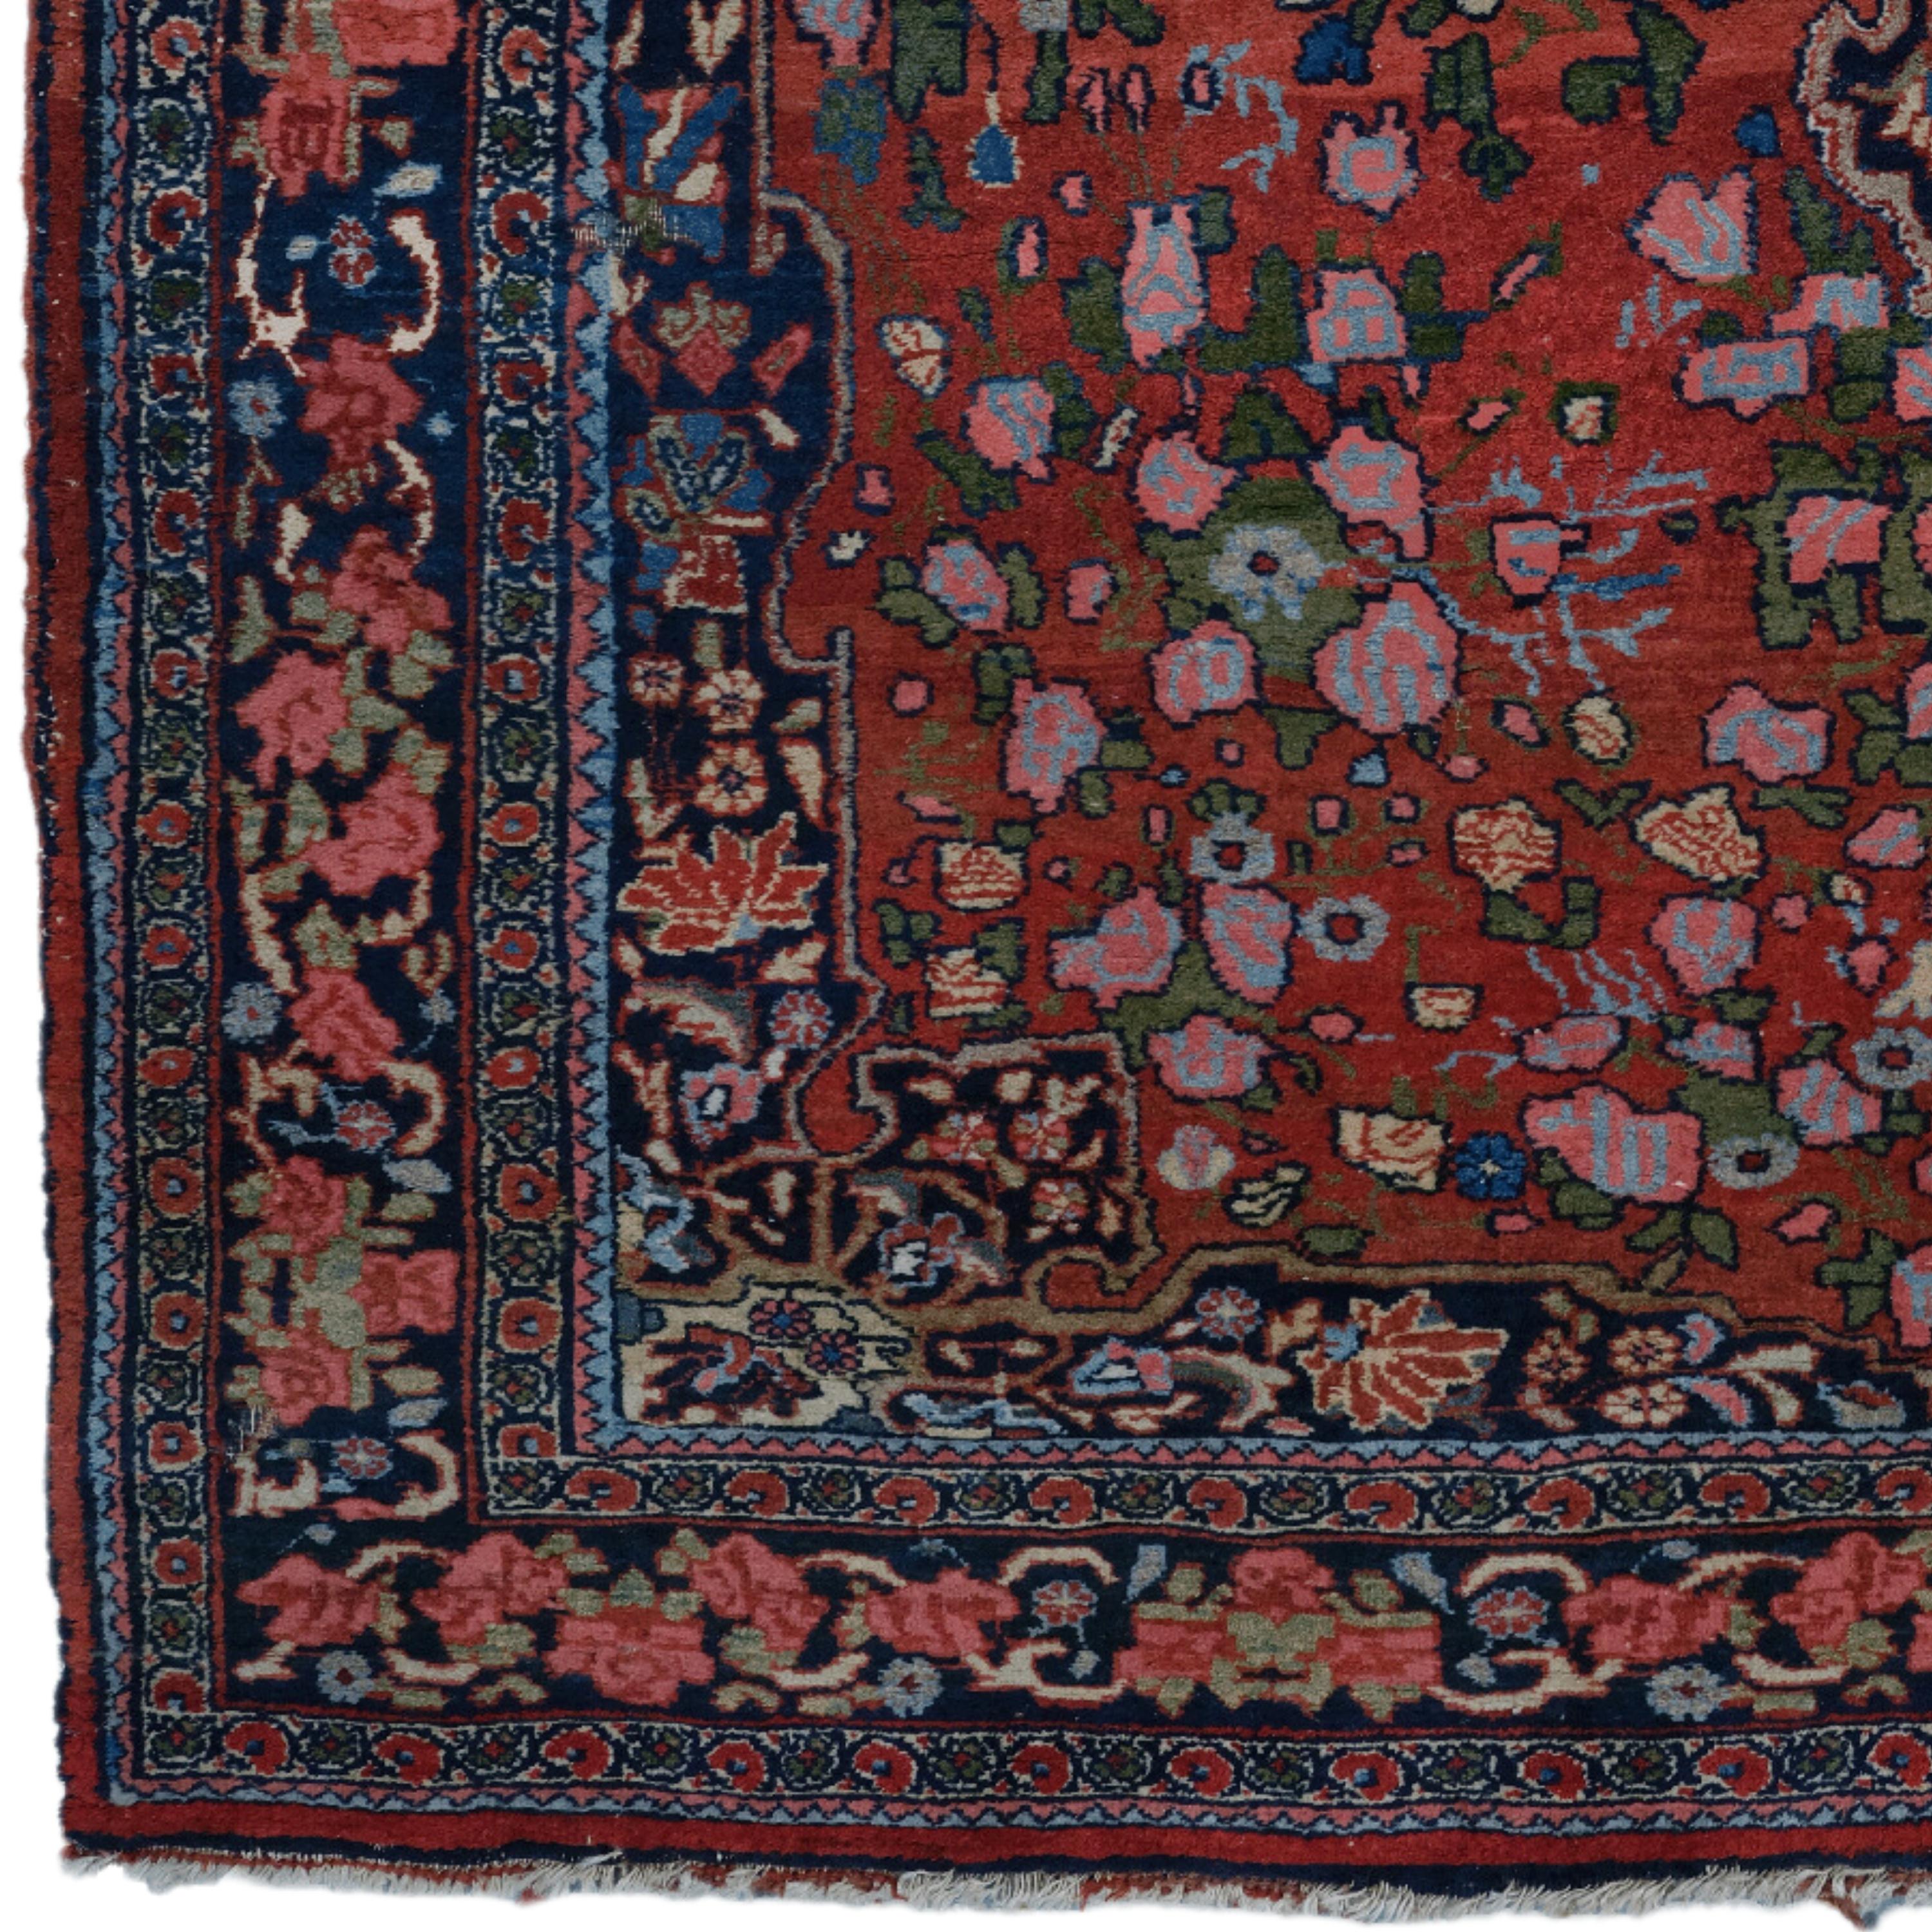 Cet élégant tapis Eleg du XIXe siècle est une œuvre d'art, soigneusement tissée et qui a résisté à l'épreuve du temps. La palette de couleurs primaires rouge foncé est parfaitement complétée par des motifs détaillés de différentes couleurs. Le motif